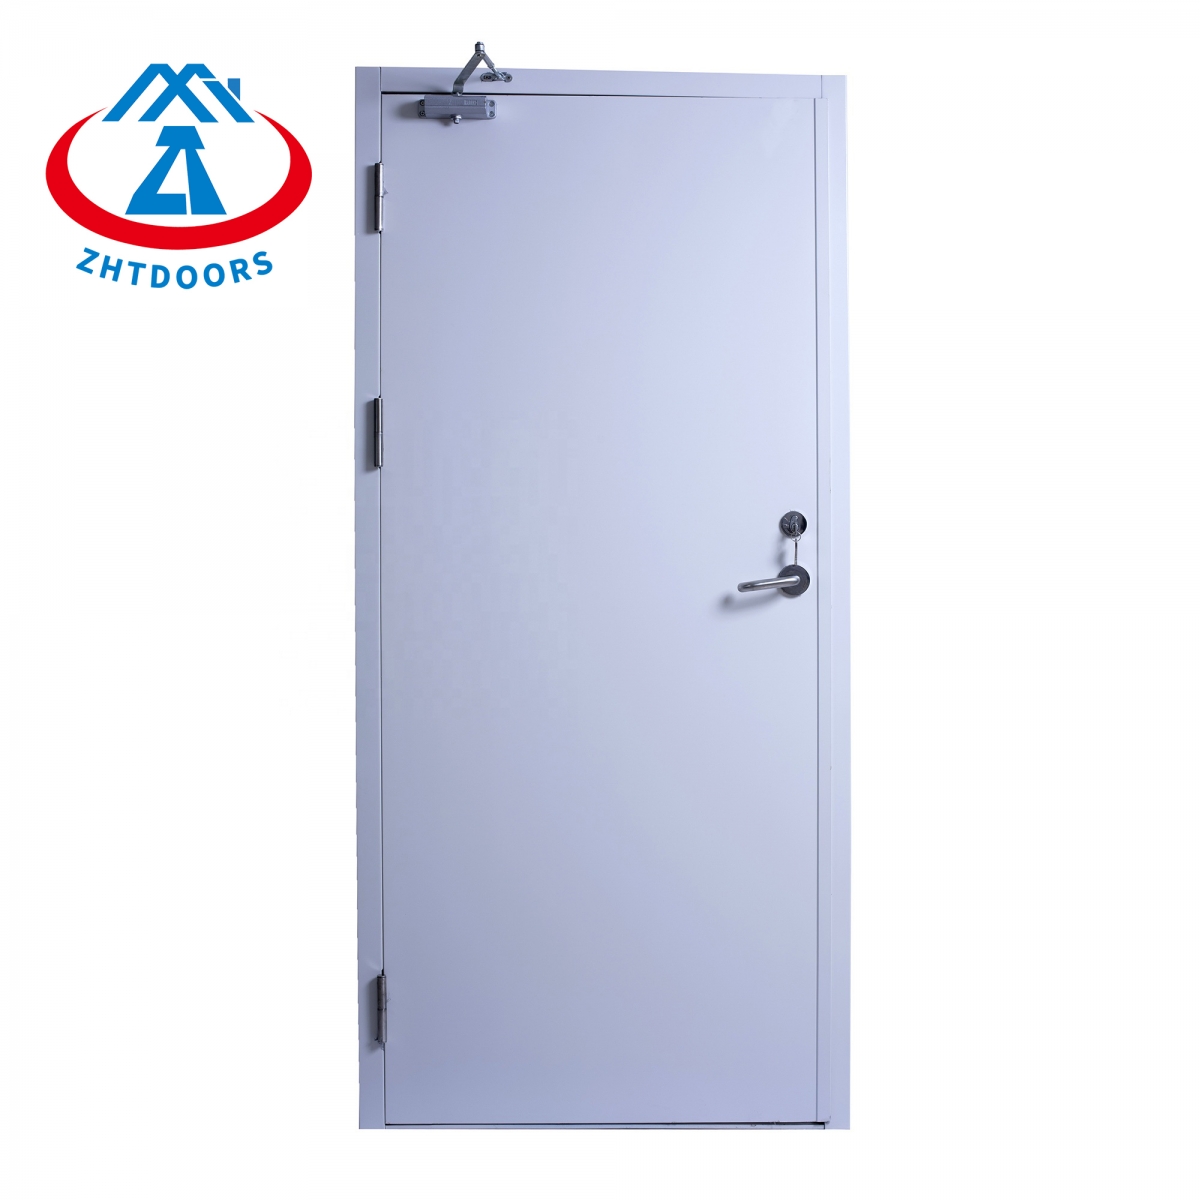 En Standard Exit Fire Rated Steel Doors-ZTFIRE Door- Fire Door,Fireproof Door,Fire rated Door,Fire Resistant Door,Steel Door,Metal Door,Exit Door